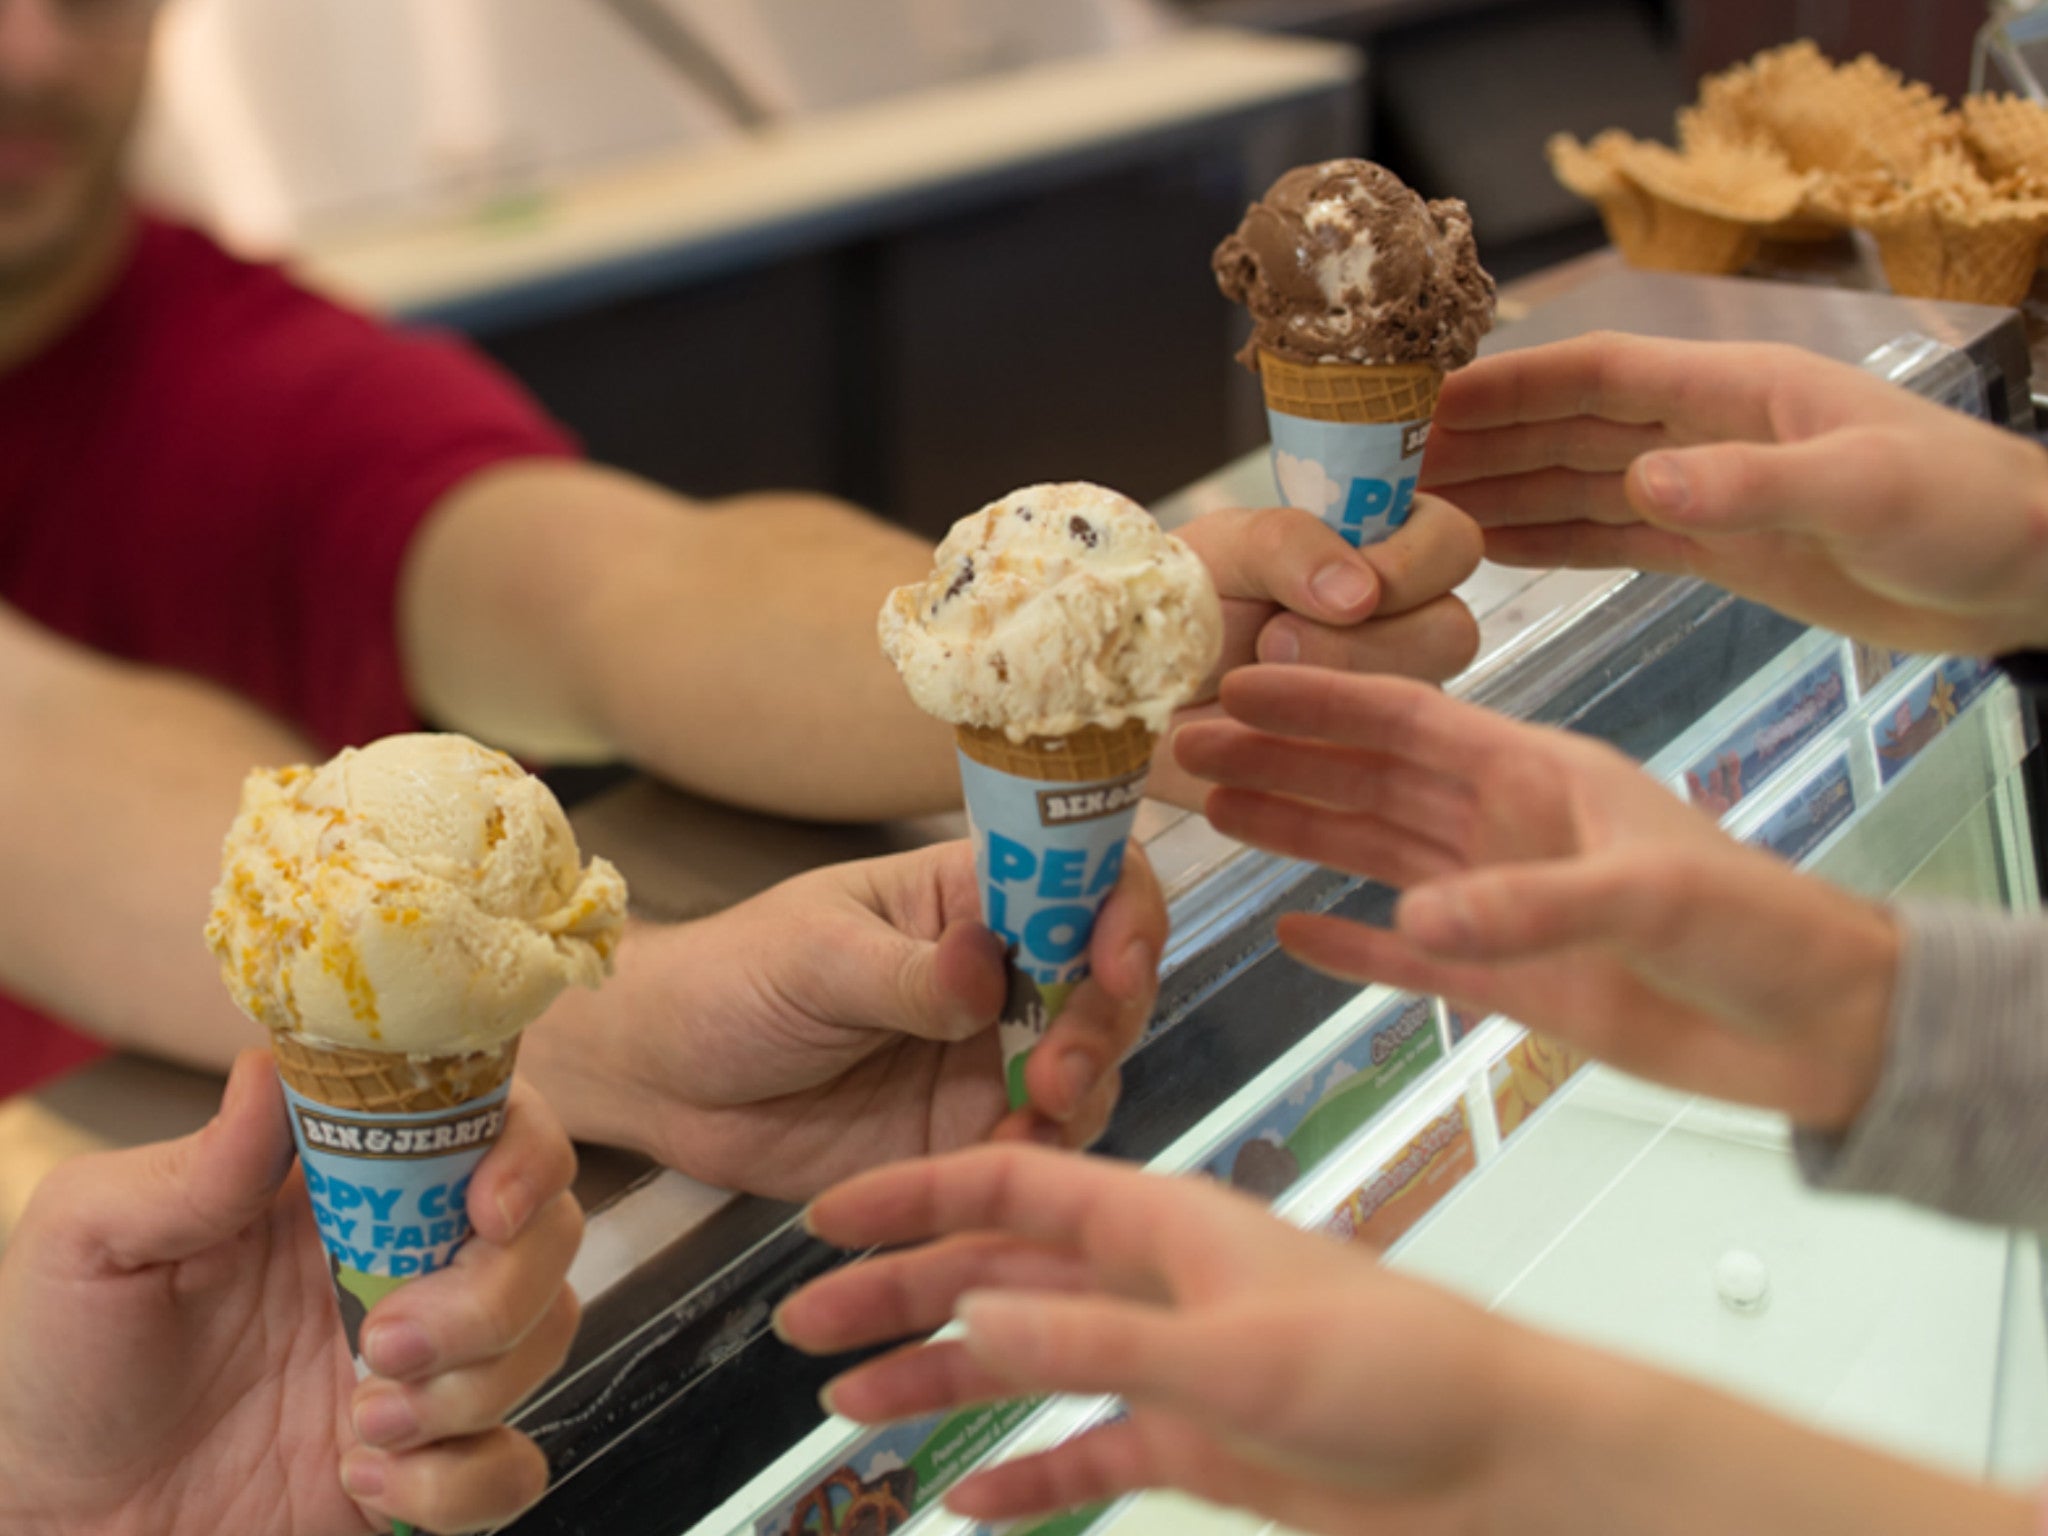 Free Ben & Jerry's ice cream – it's happening